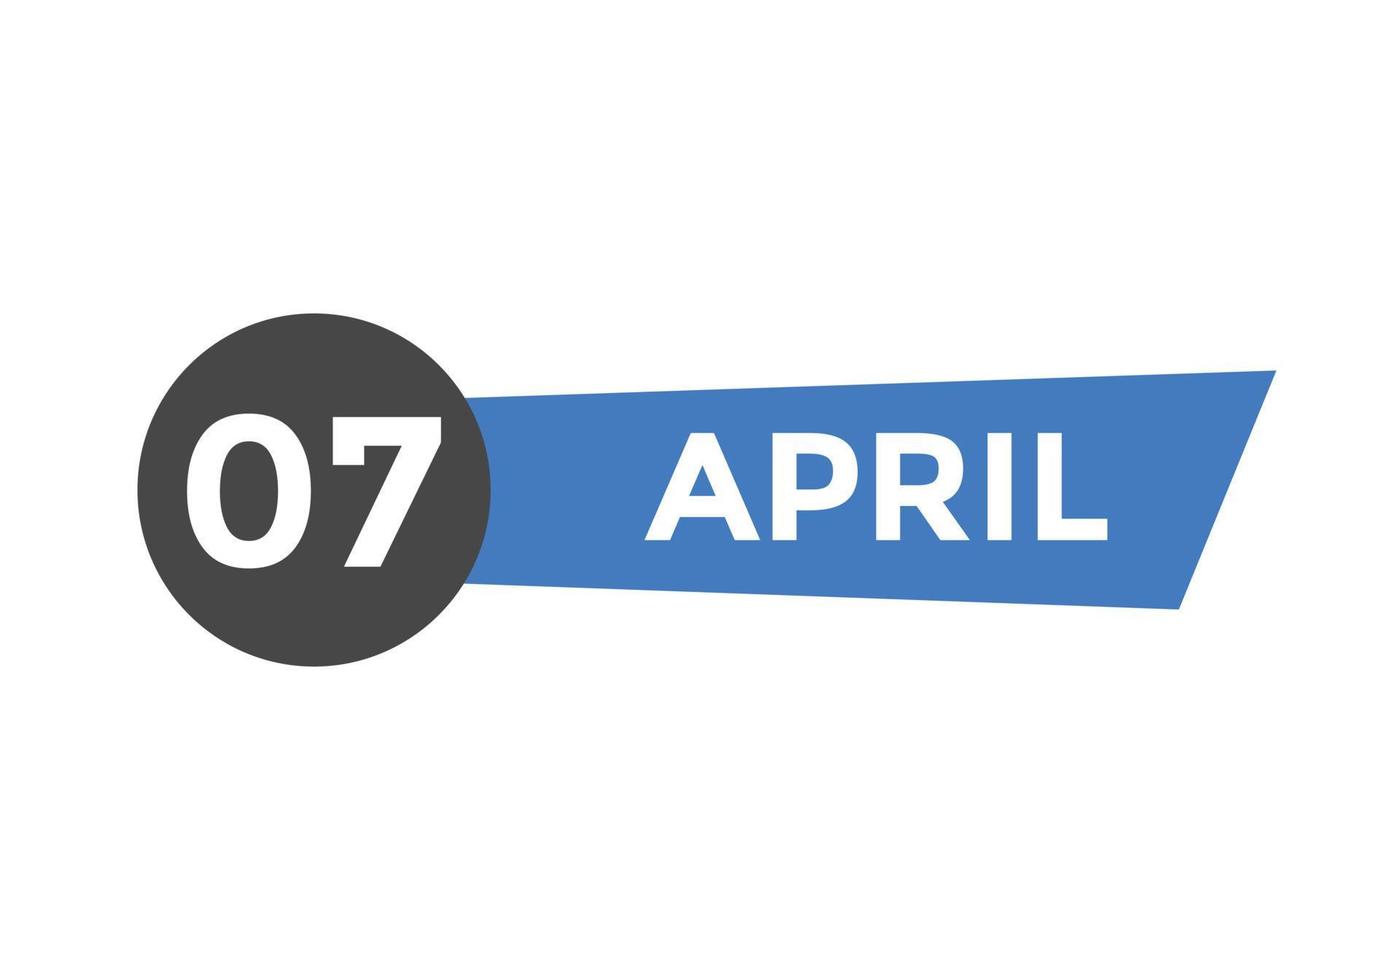 Recordatorio del calendario del 7 de abril. Plantilla de icono de calendario diario del 7 de abril. calendario 7 de abril plantilla de diseño de iconos. ilustración vectorial vector